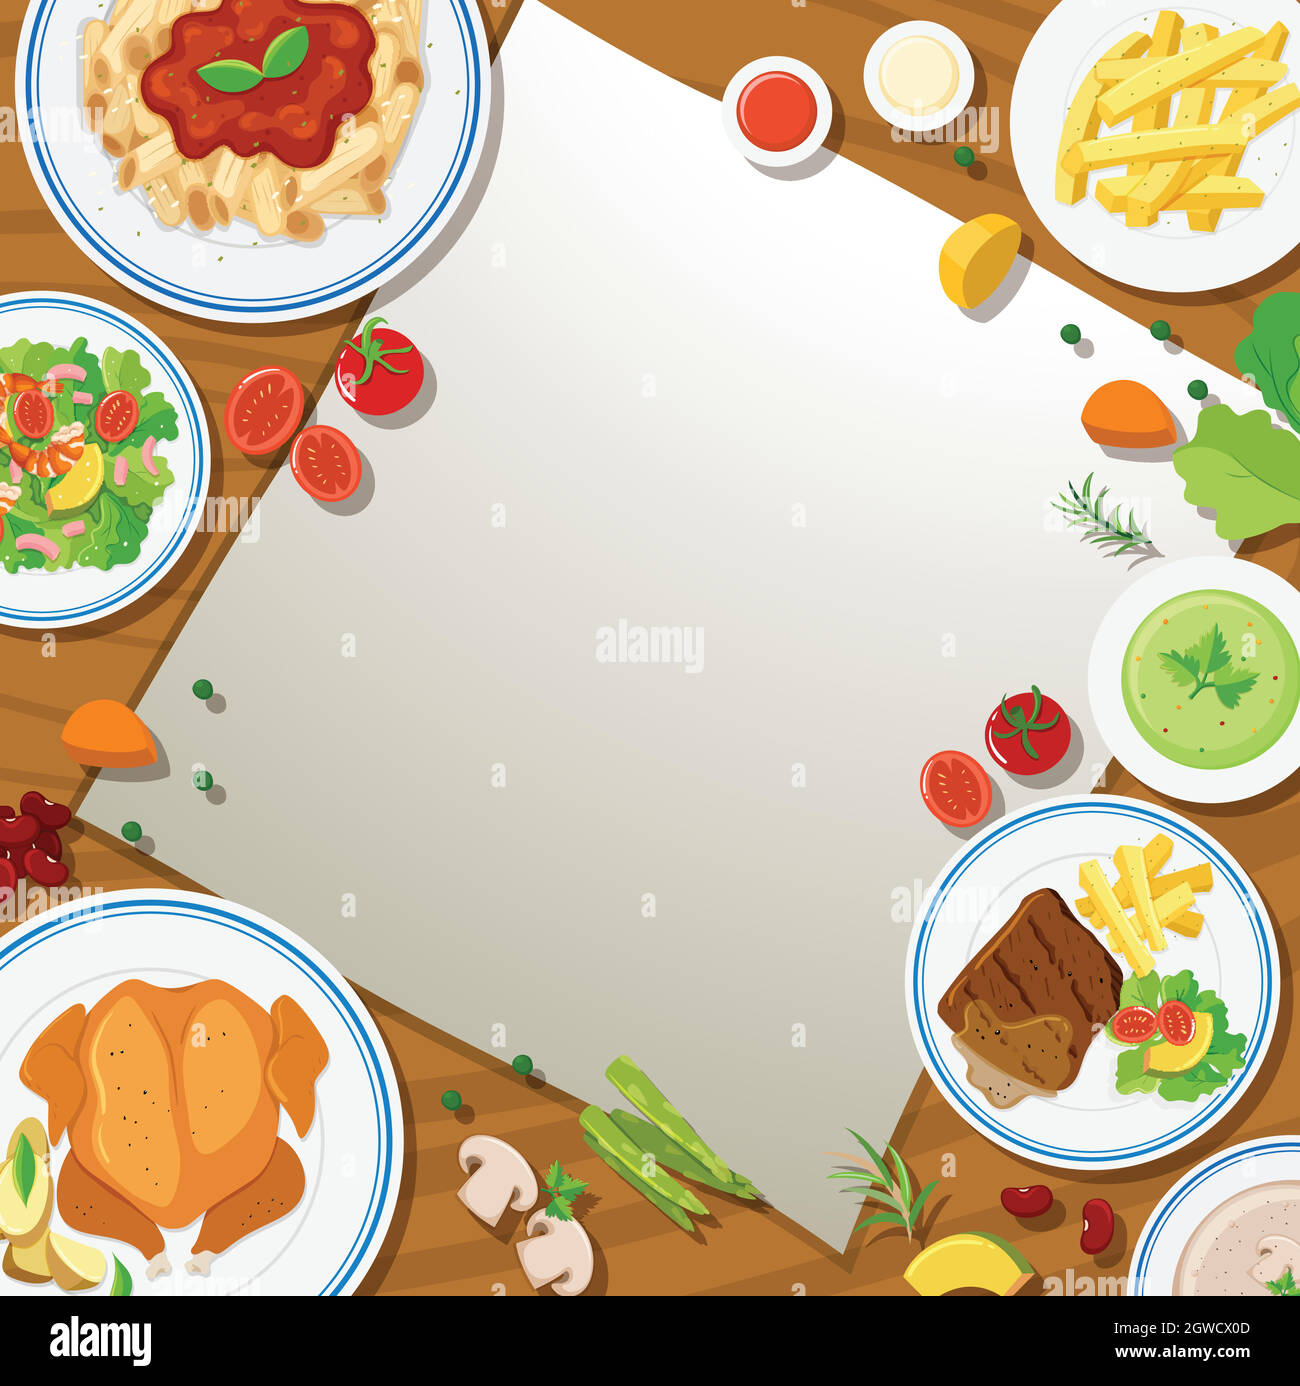 Modèle de bordure avec différents aliments dans les assiettes Illustration de Vecteur